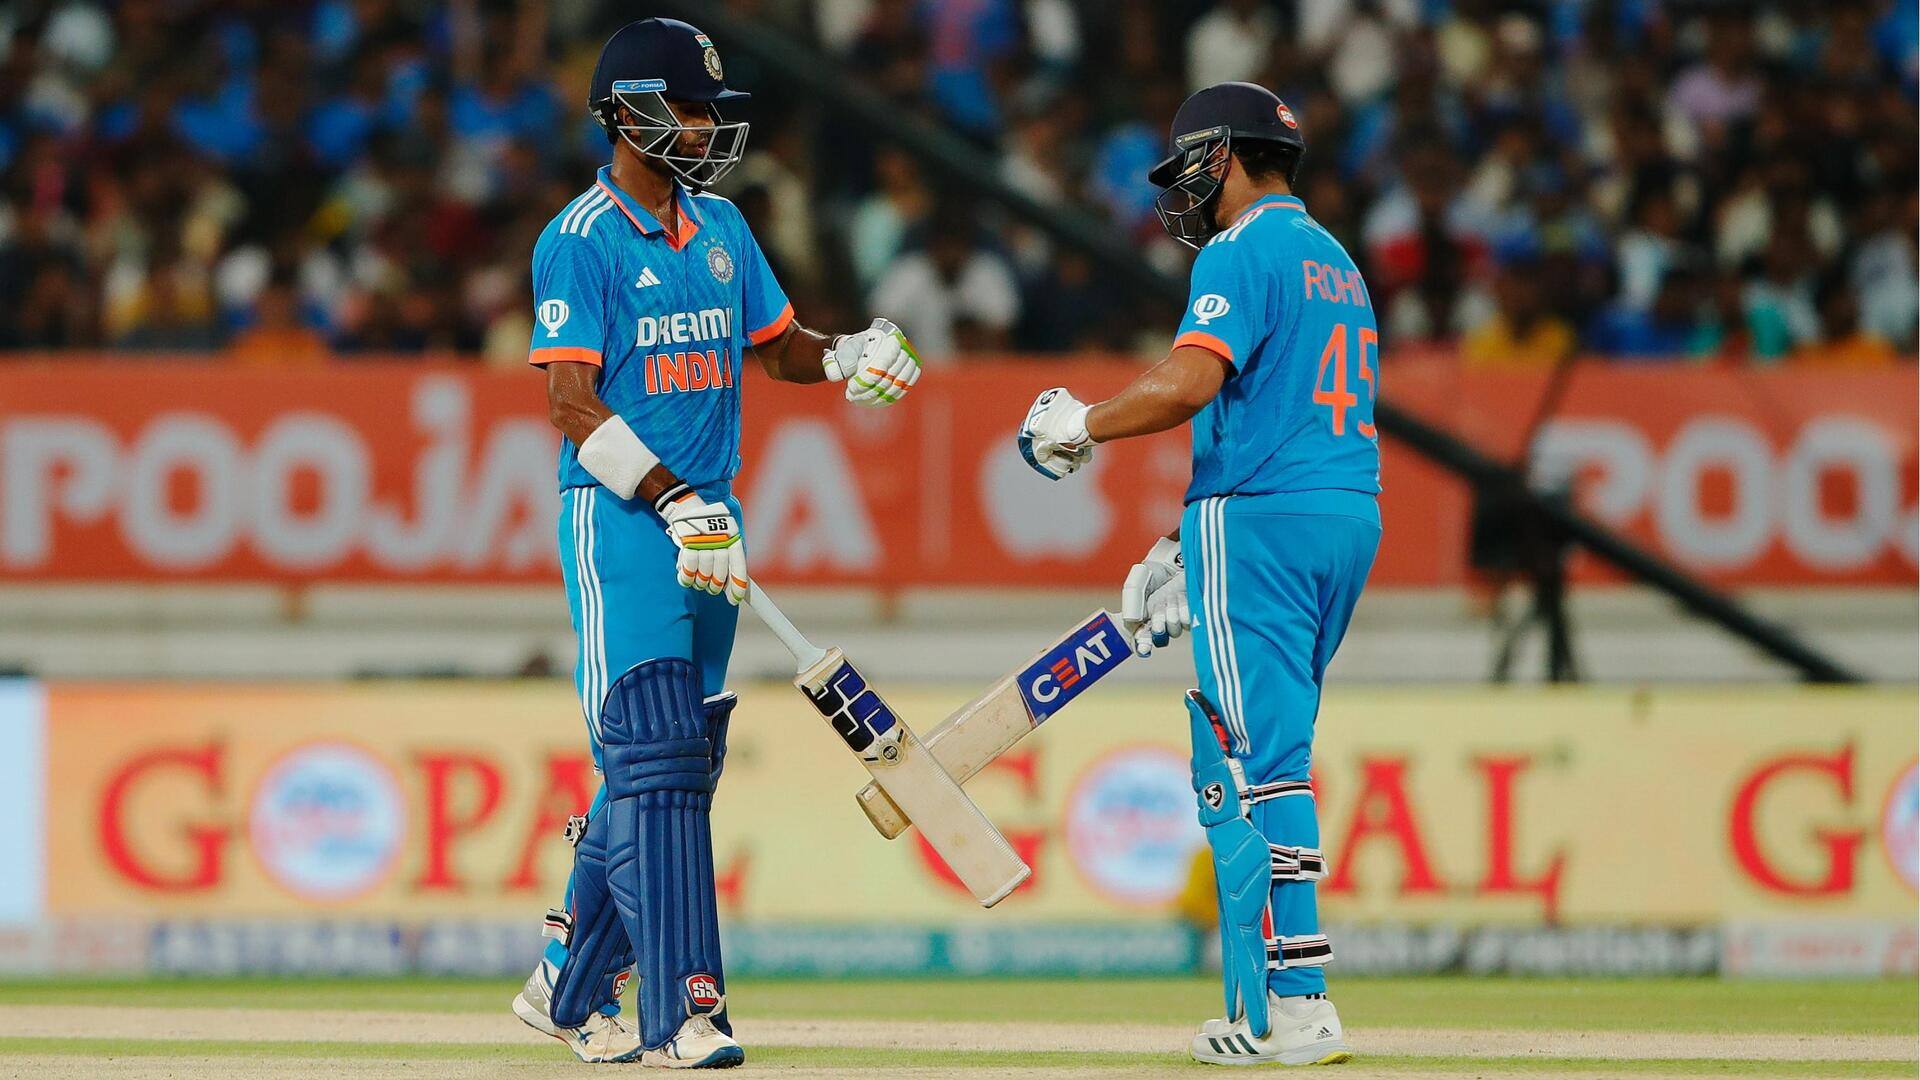 वनडे विश्व कप: भारतीय क्रिकेट टीम के इंग्लैंड के खिलाफ प्रदर्शन पर एक नजर 